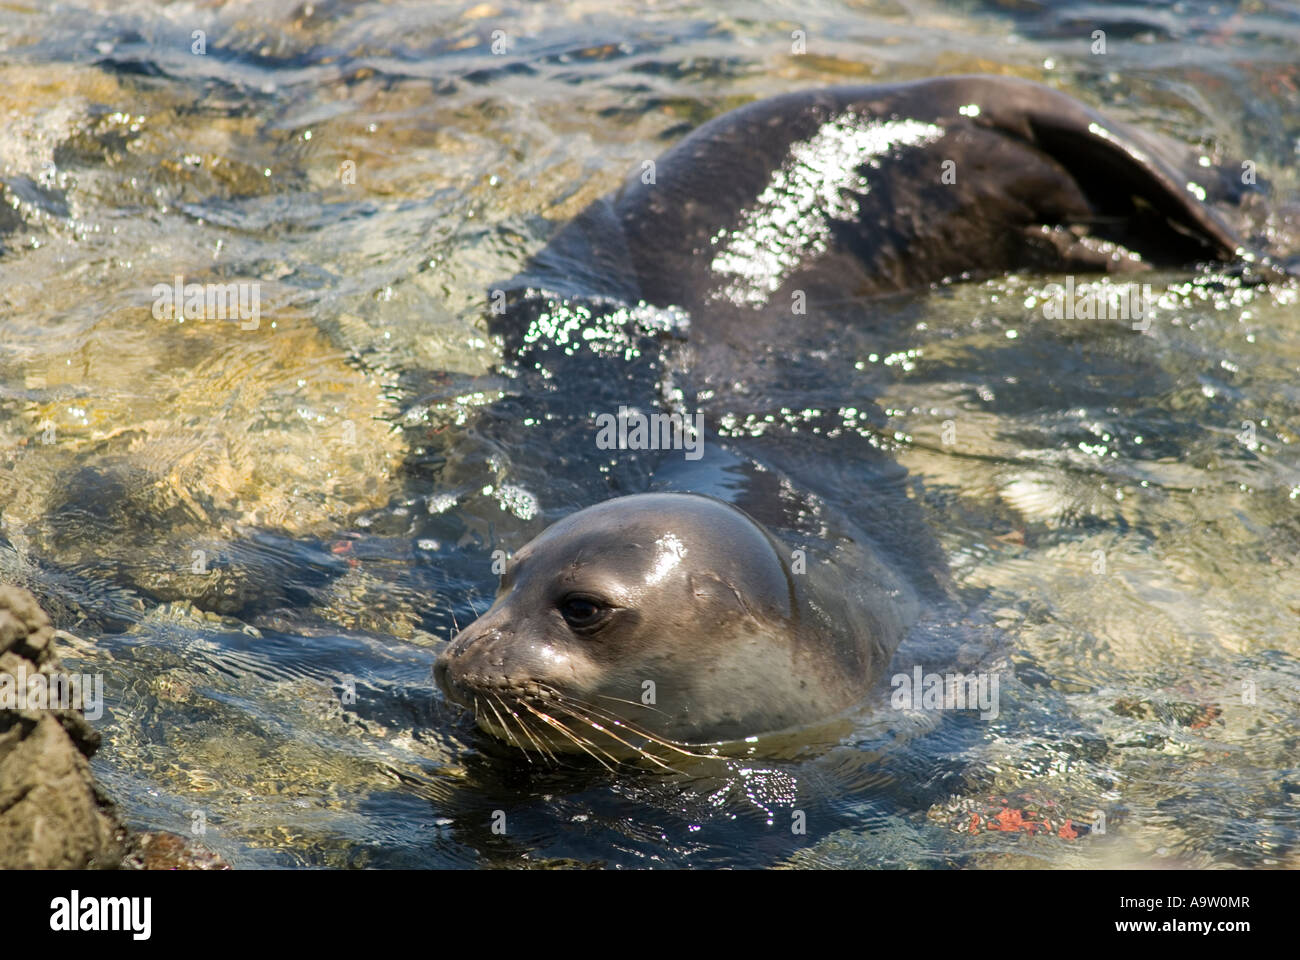 Especies en peligro de extinción, foca monje del Mediterráneo Monachus monachus, nadar a lo largo de la península de Datca, Turquía. Foto de stock